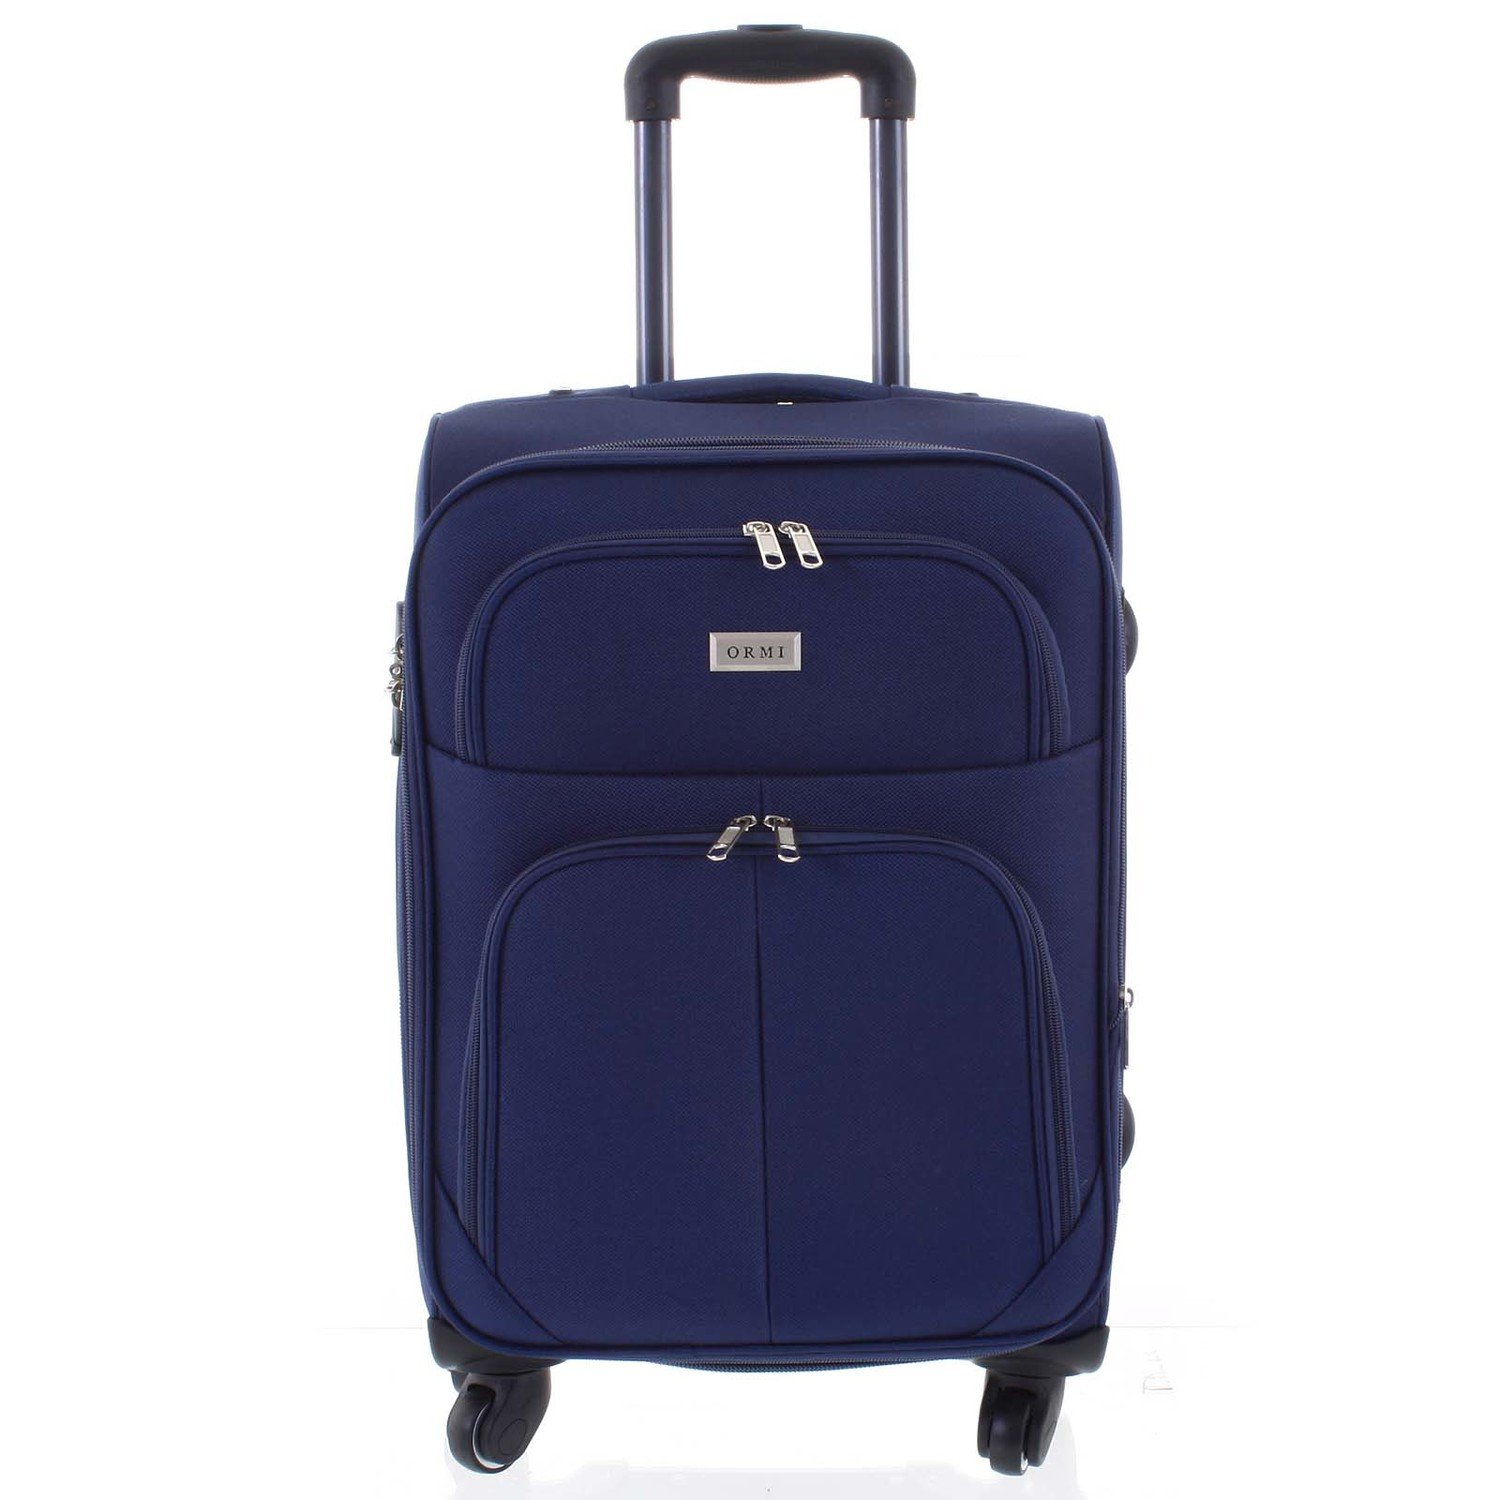 Cestovní kufr modrý - Ormi Tessa L modrá